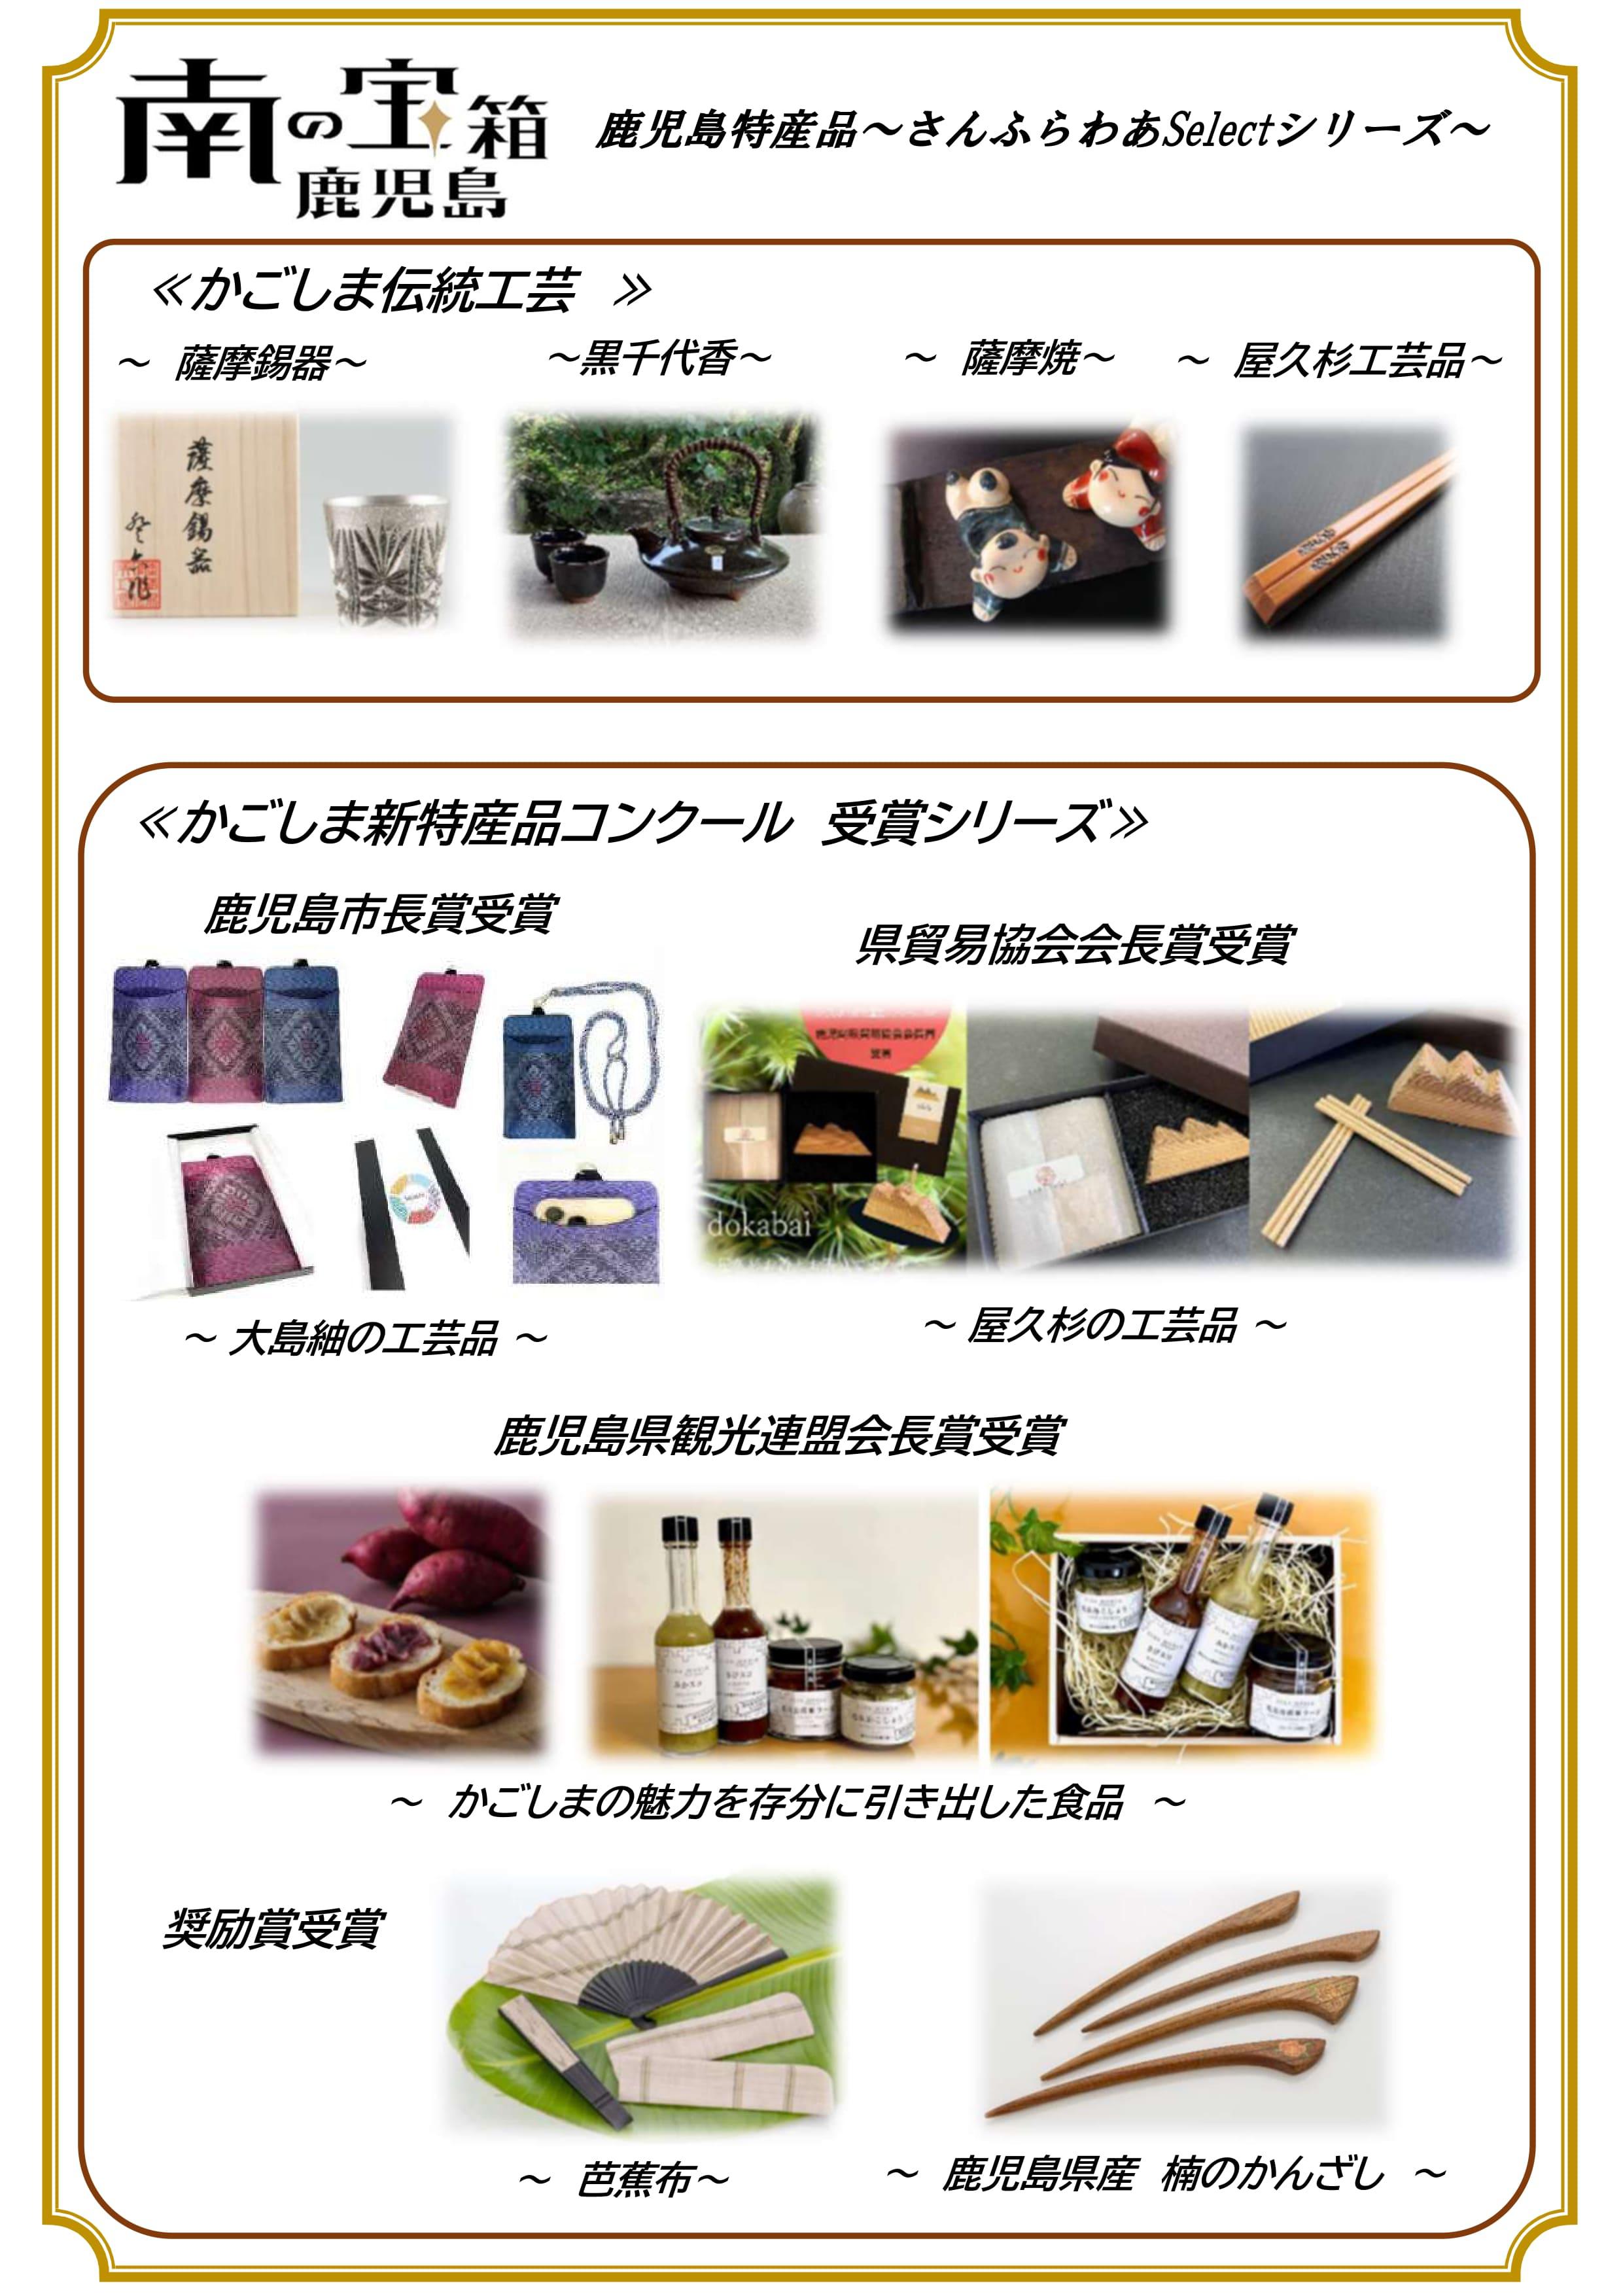 鹿児島特産品～さんふらわあSelectシリーズ～_page-0001 (1).jpg